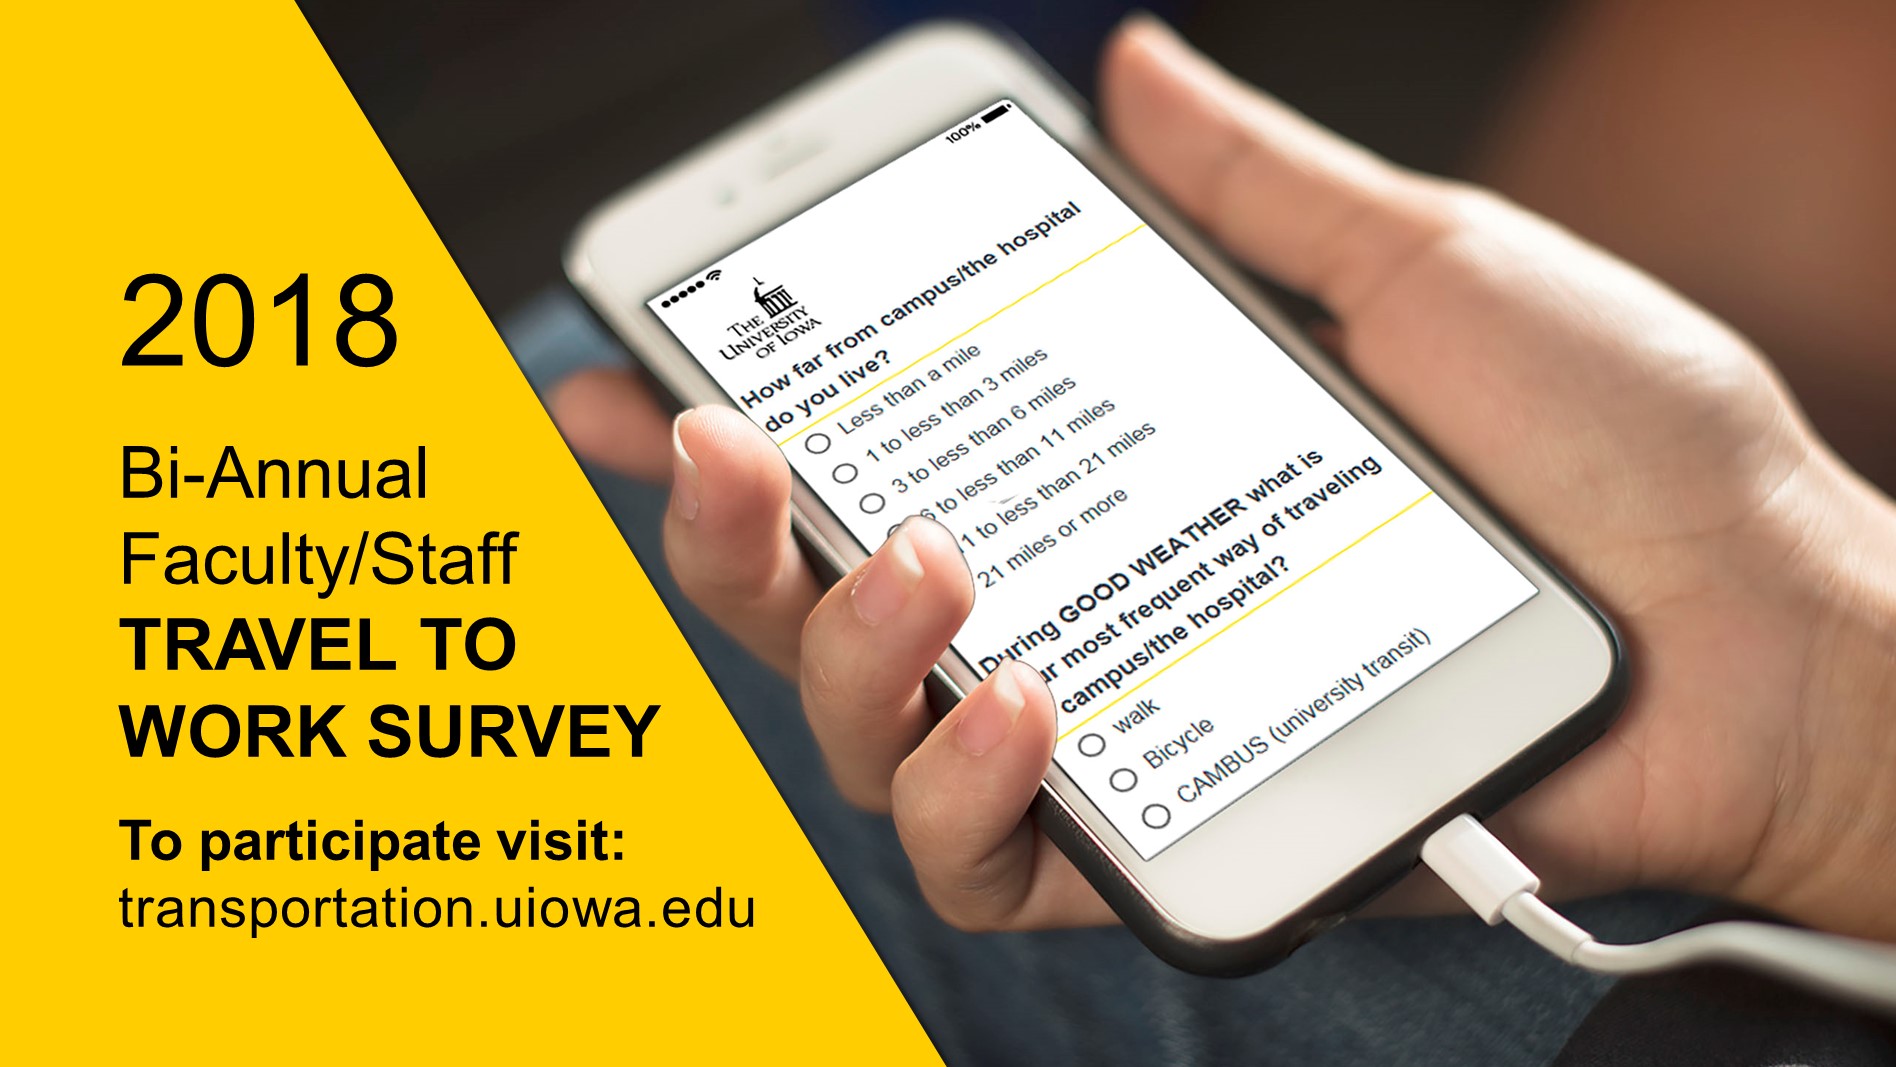 Take the travel to work survey at transportation.uiowa.edu